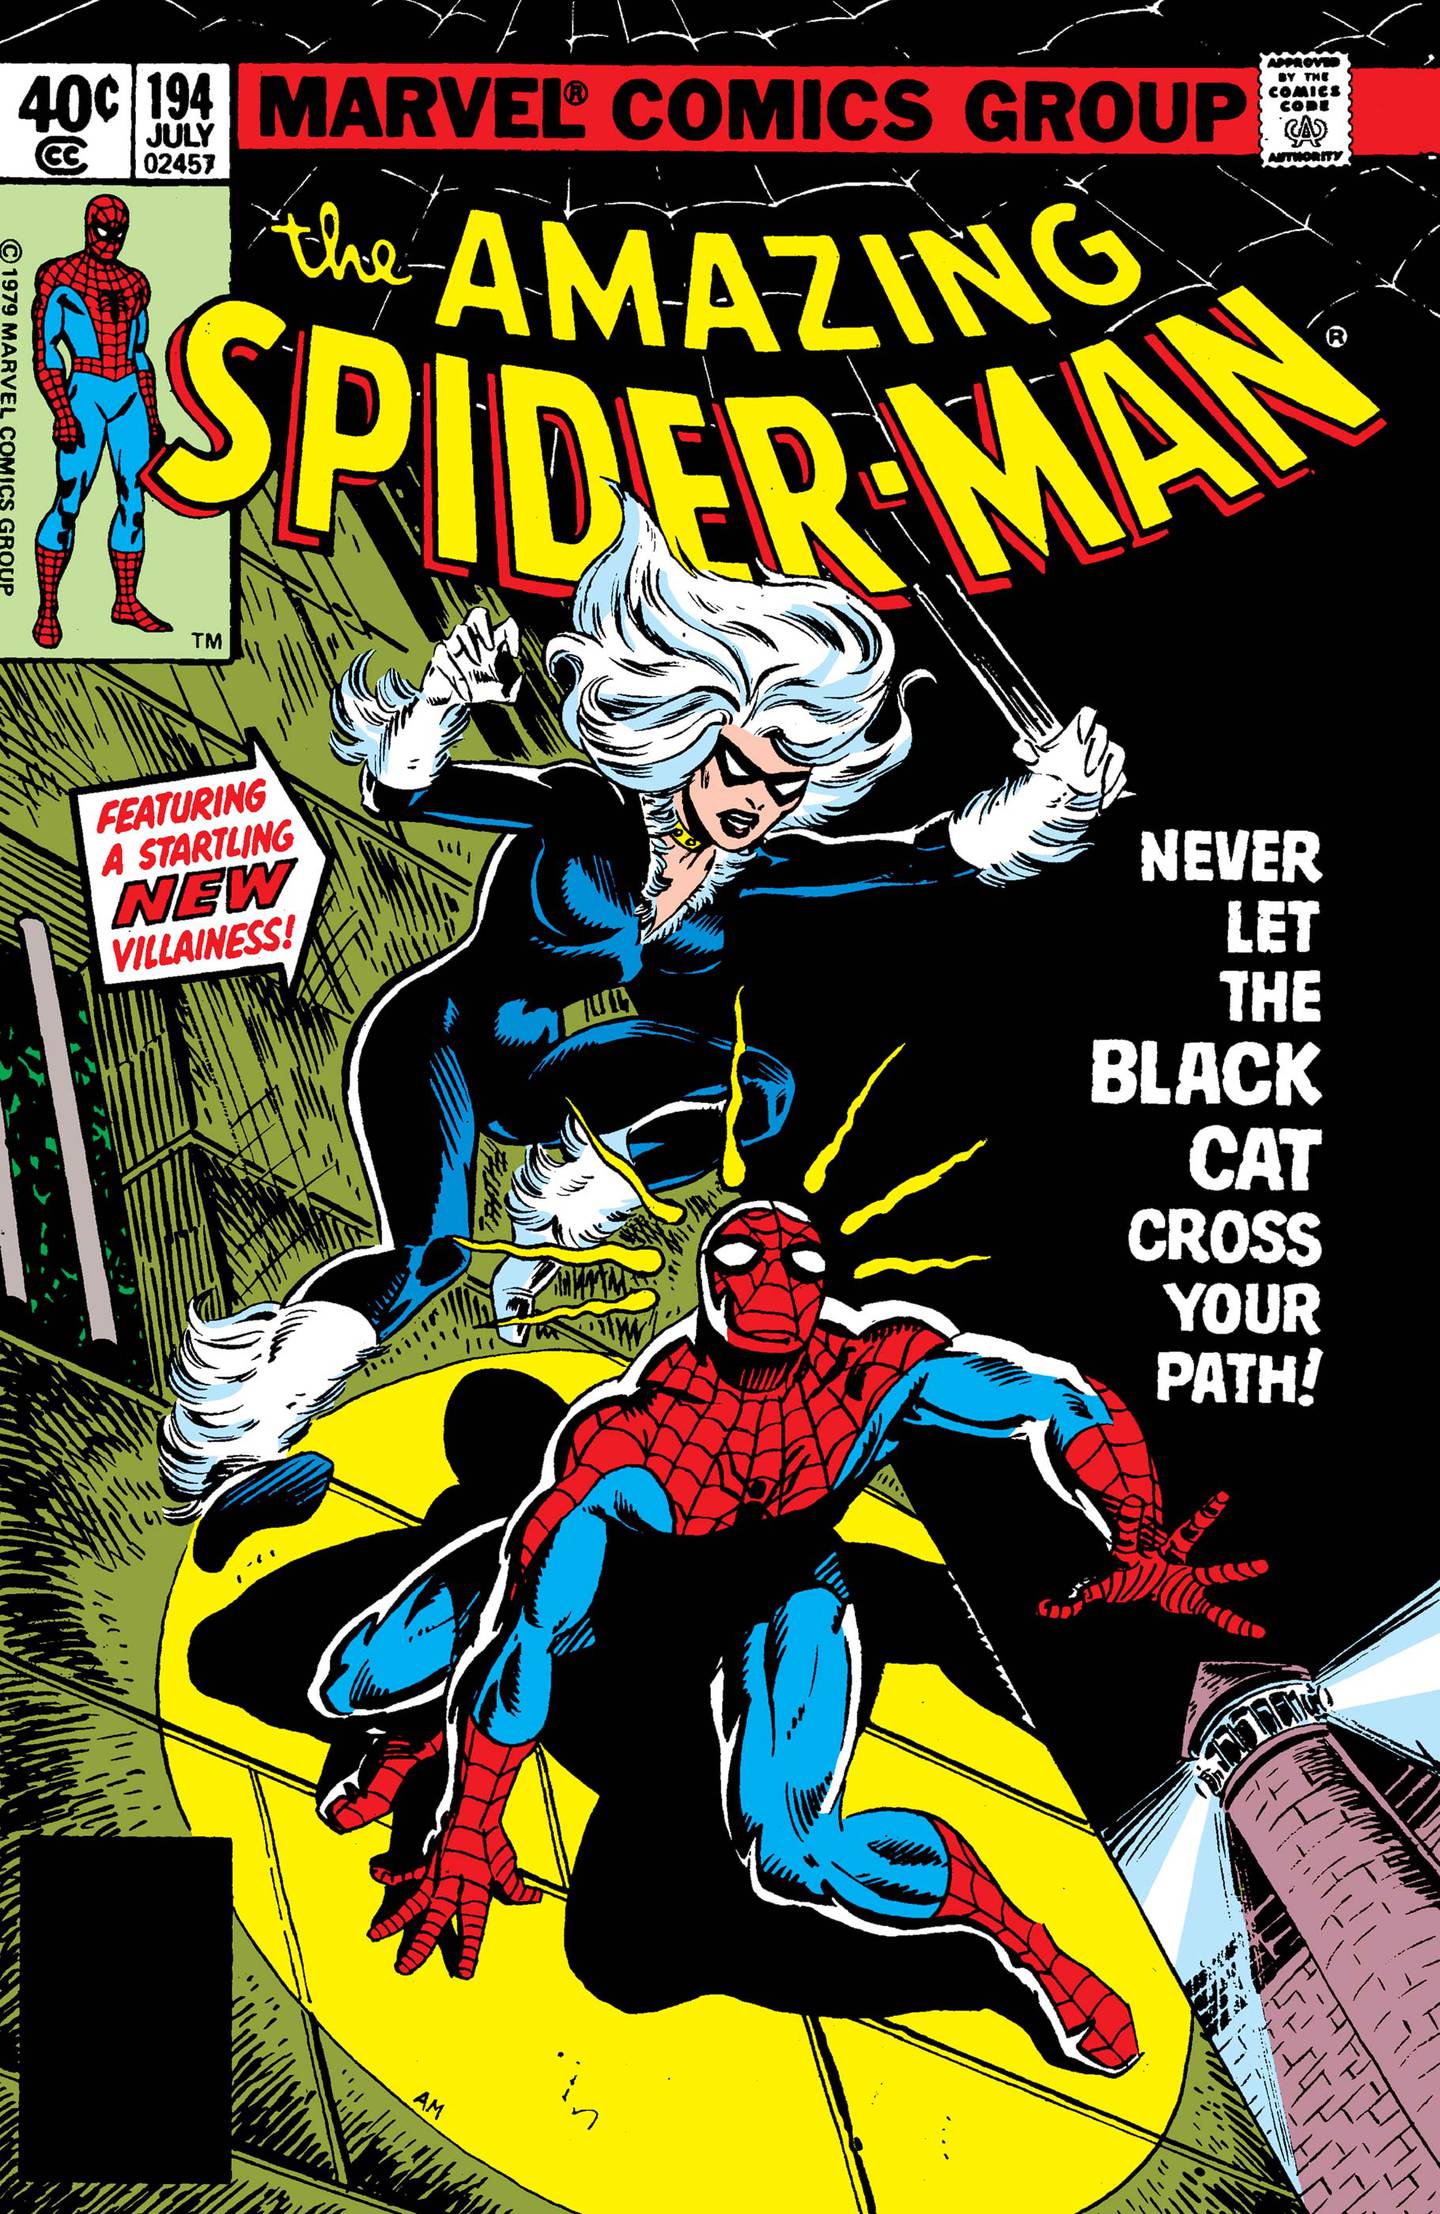 Portada de Amazing Spiderman #194.